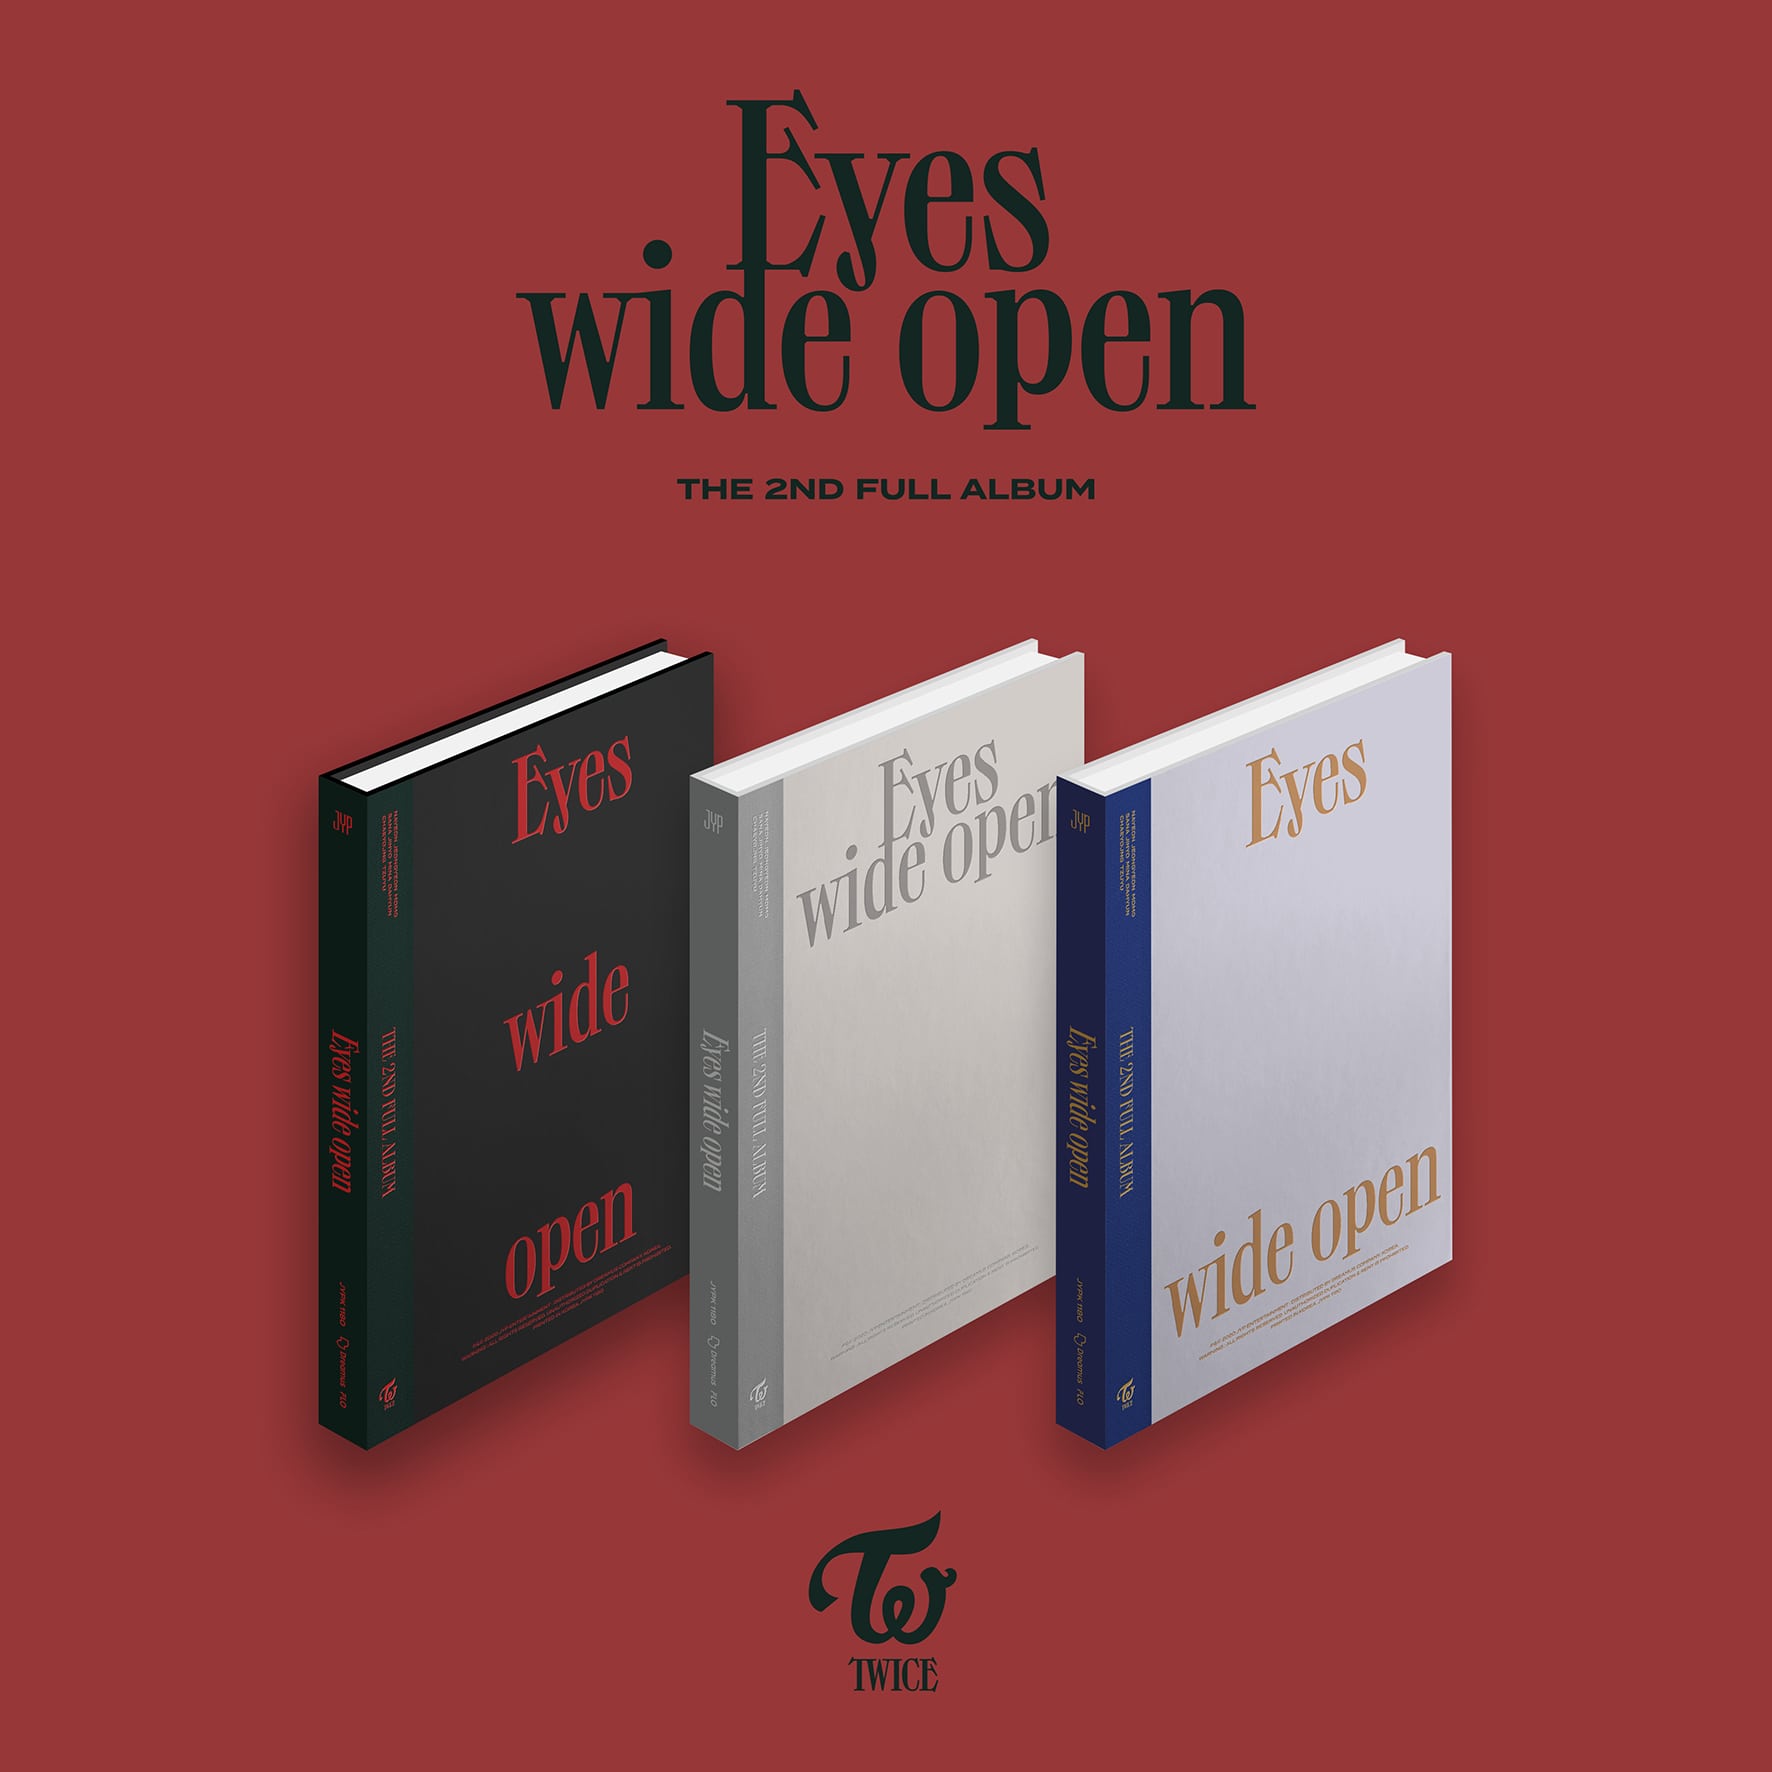 TWICE 2nd Album Eyes wide open